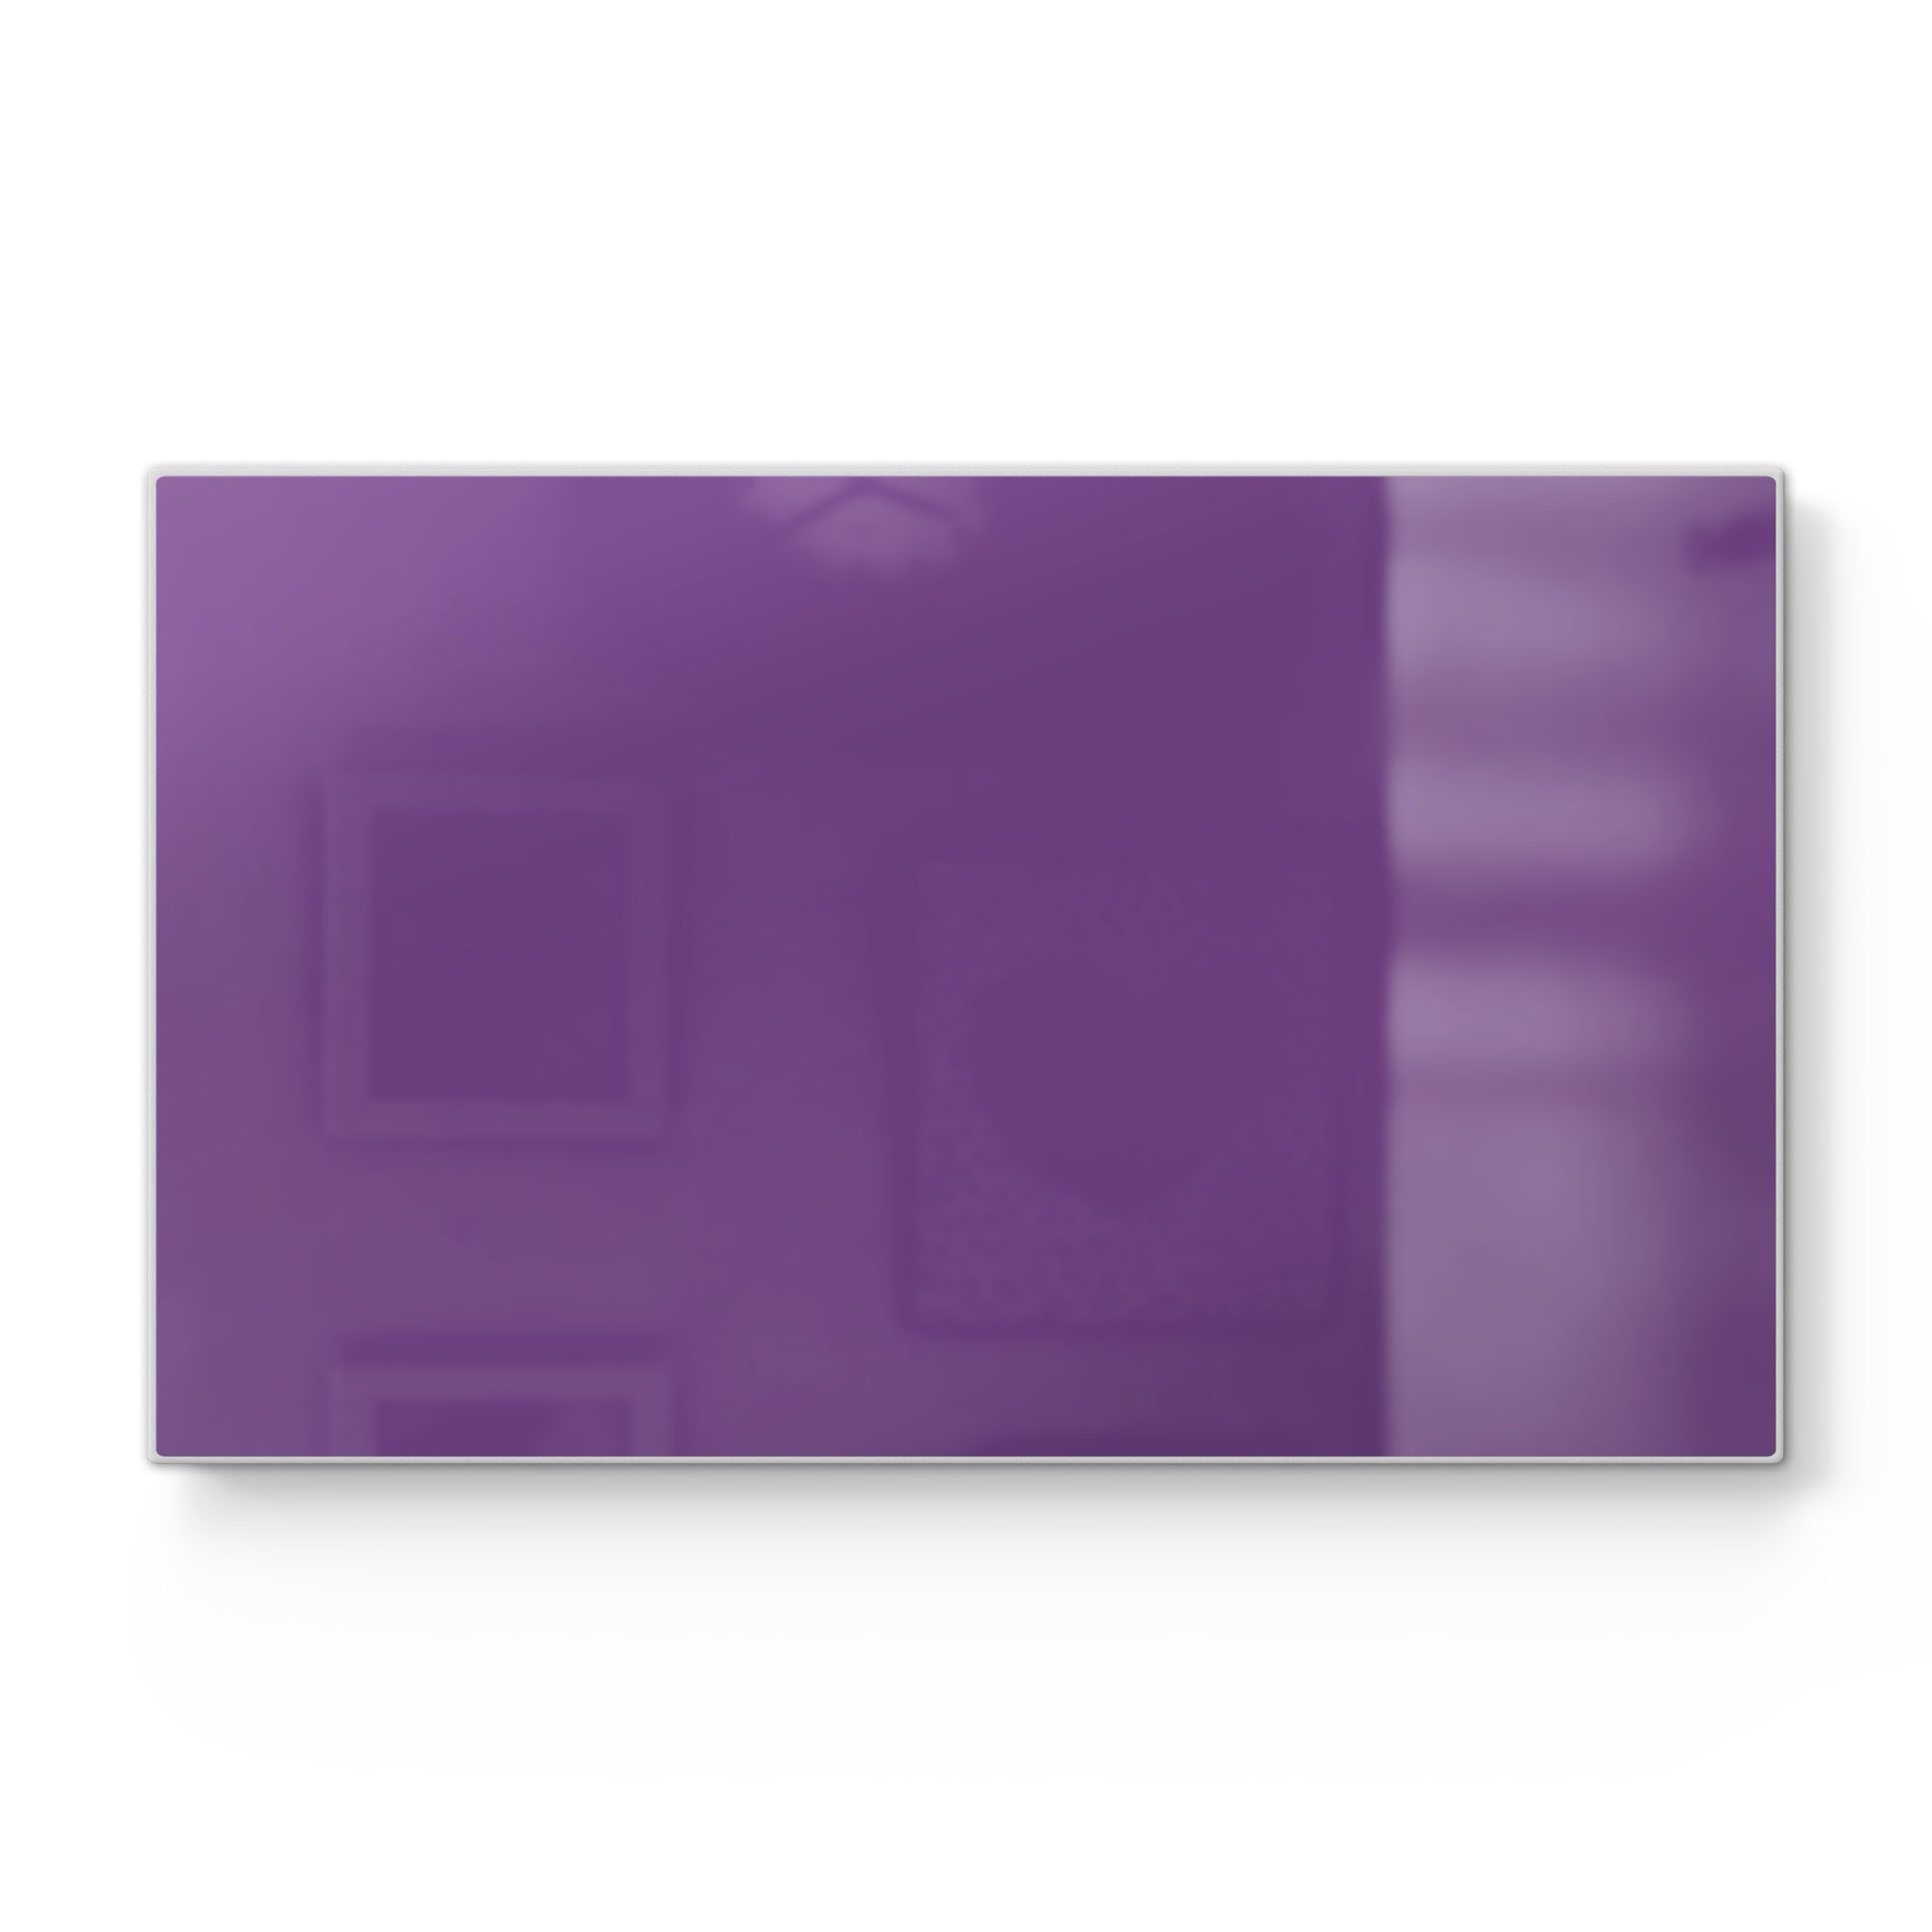 DEQORI Schneidebrett 'Unifarben - Violett', Glas, Platte Frühstücksbrett Schneideplatte